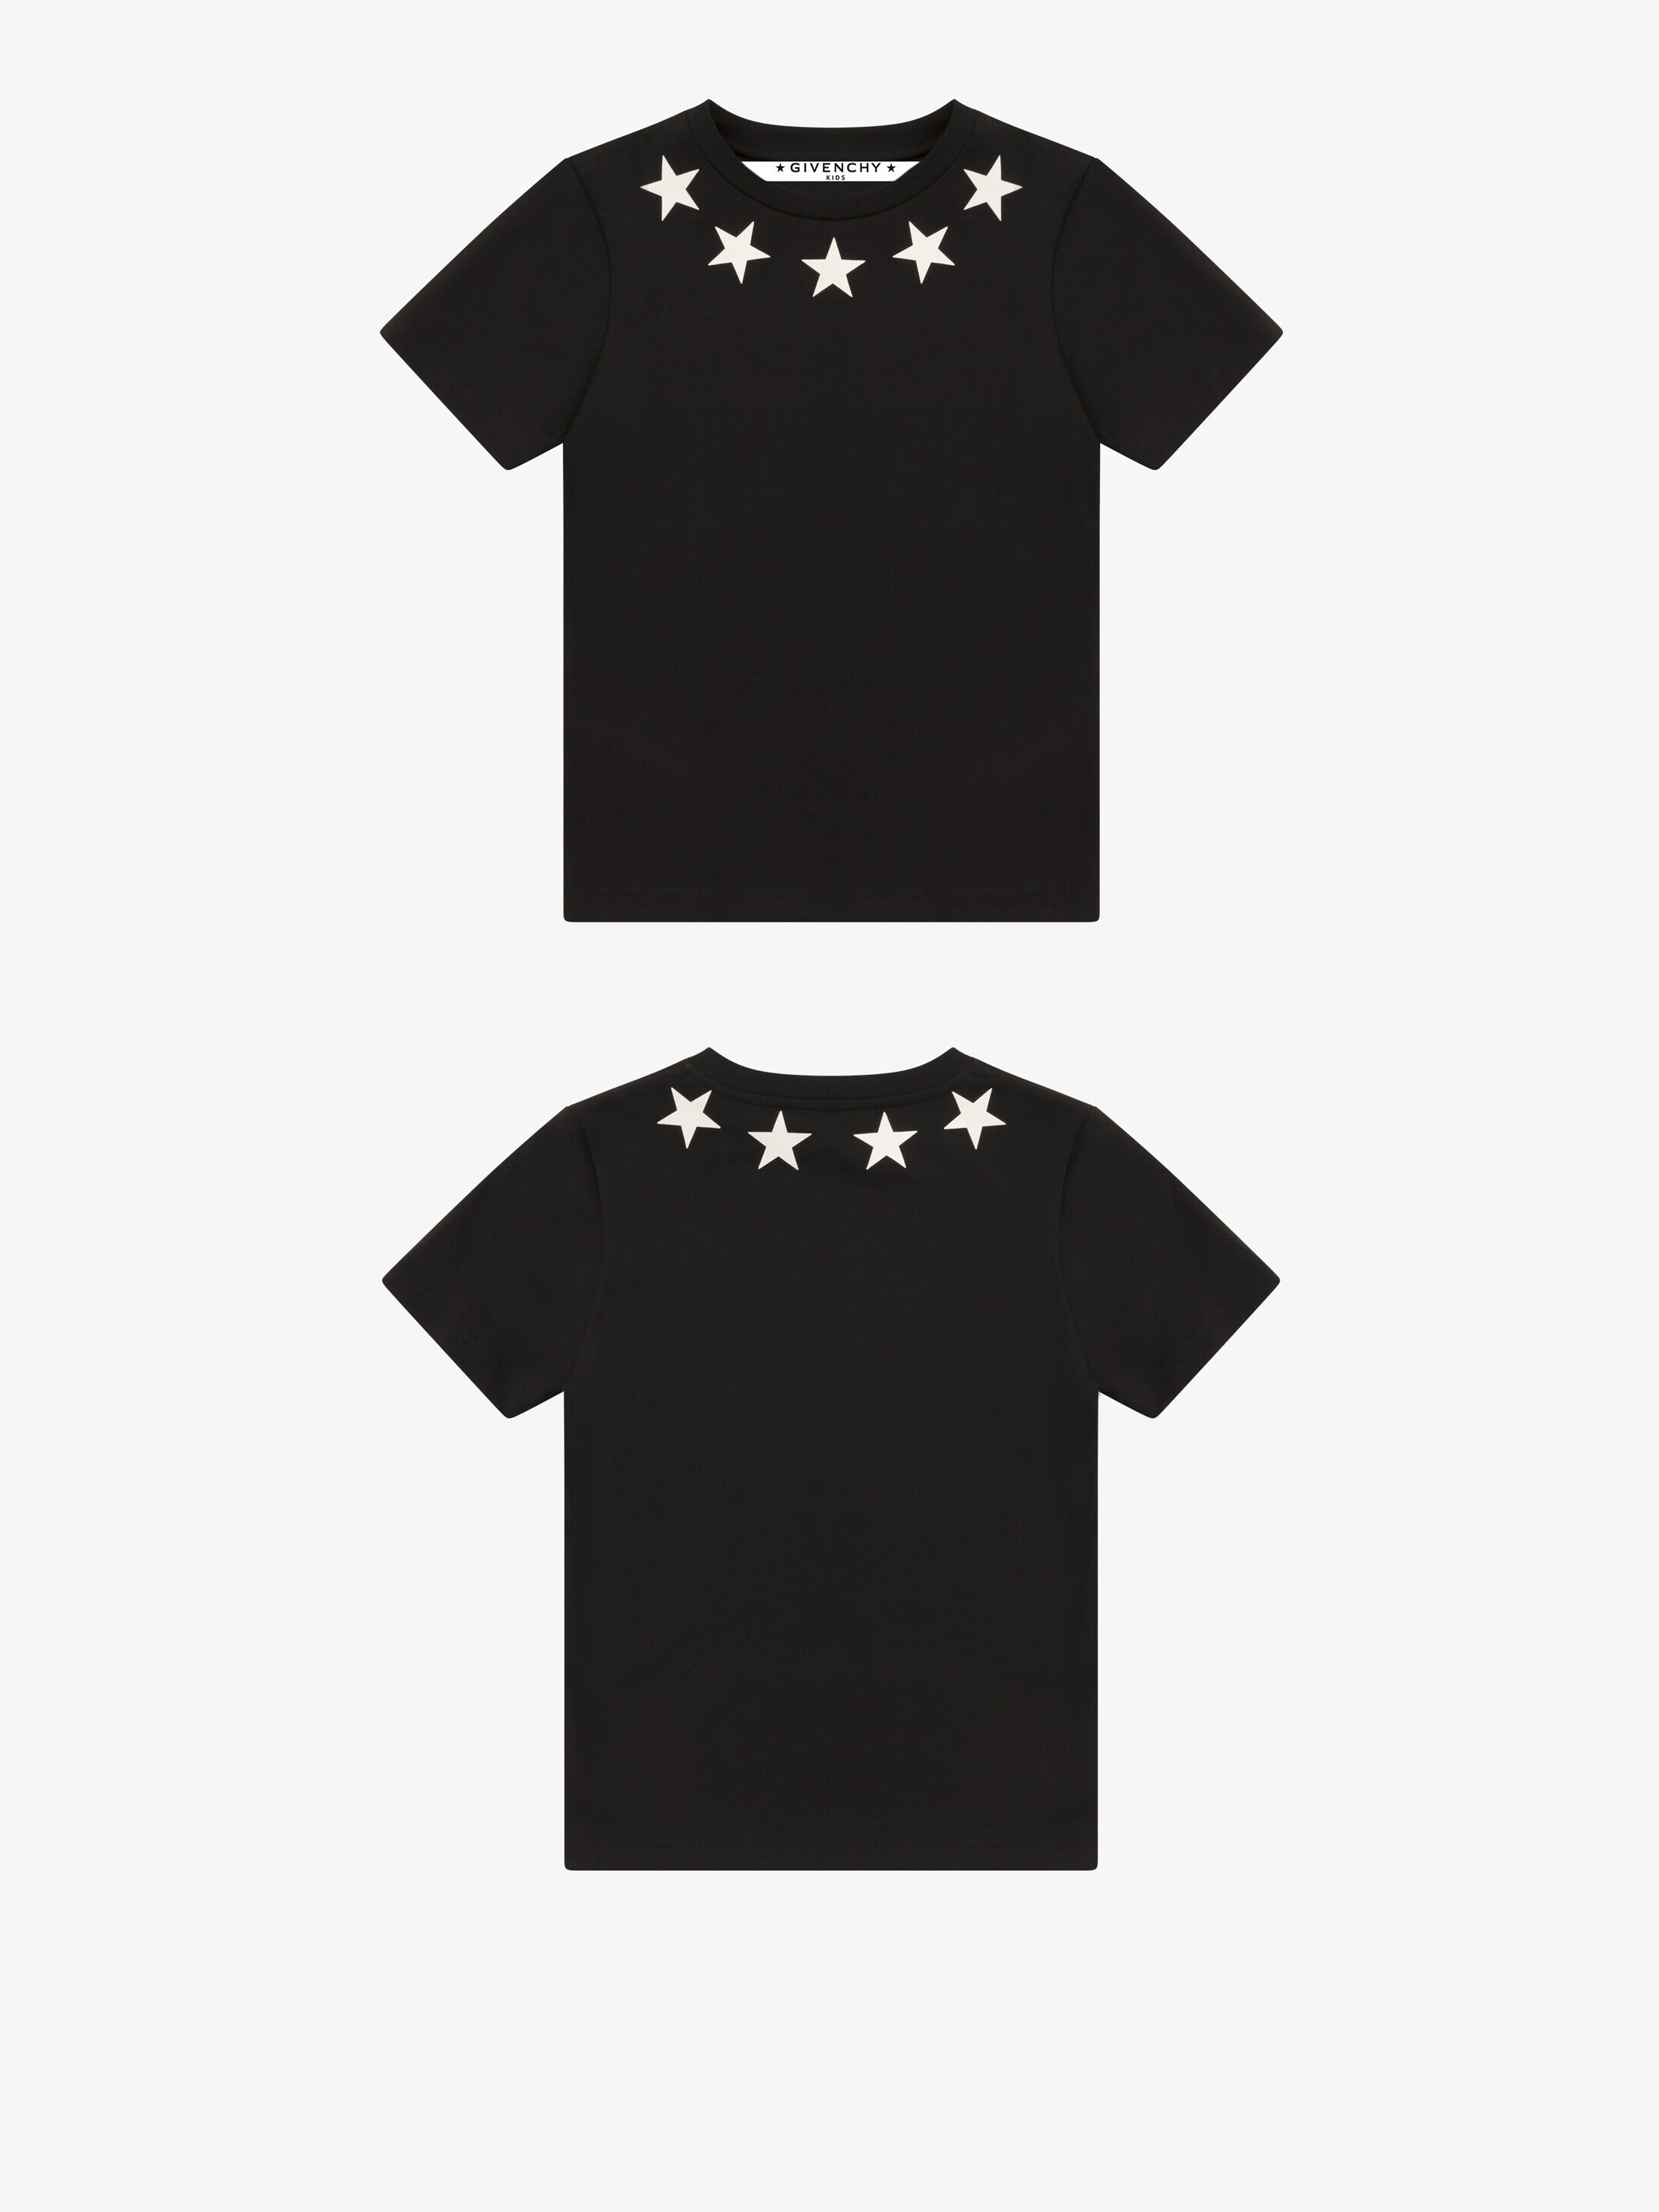 Stars printed t-shirt | GIVENCHY Paris